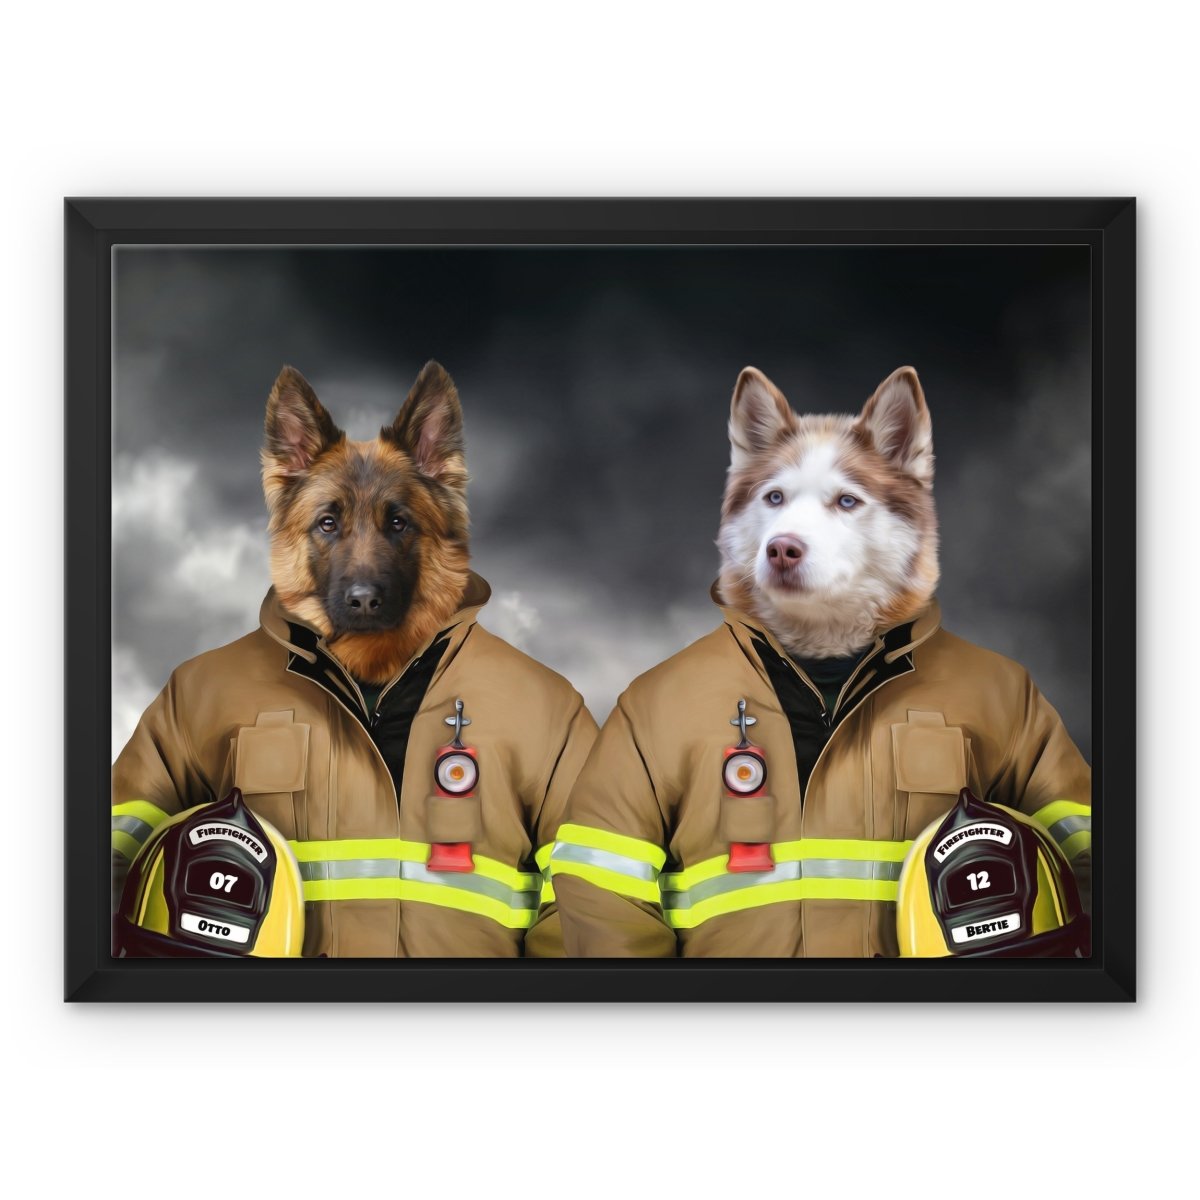 The Firemen: Custom Pet Canvas - Paw & Glory - #pet portraits# - #dog portraits# - #pet portraits uk#paw & glory, pet portraits canvas,dog photo on canvas, dog canvas painting, the pet canvas, dog canvas wall art, dog portrait canvas